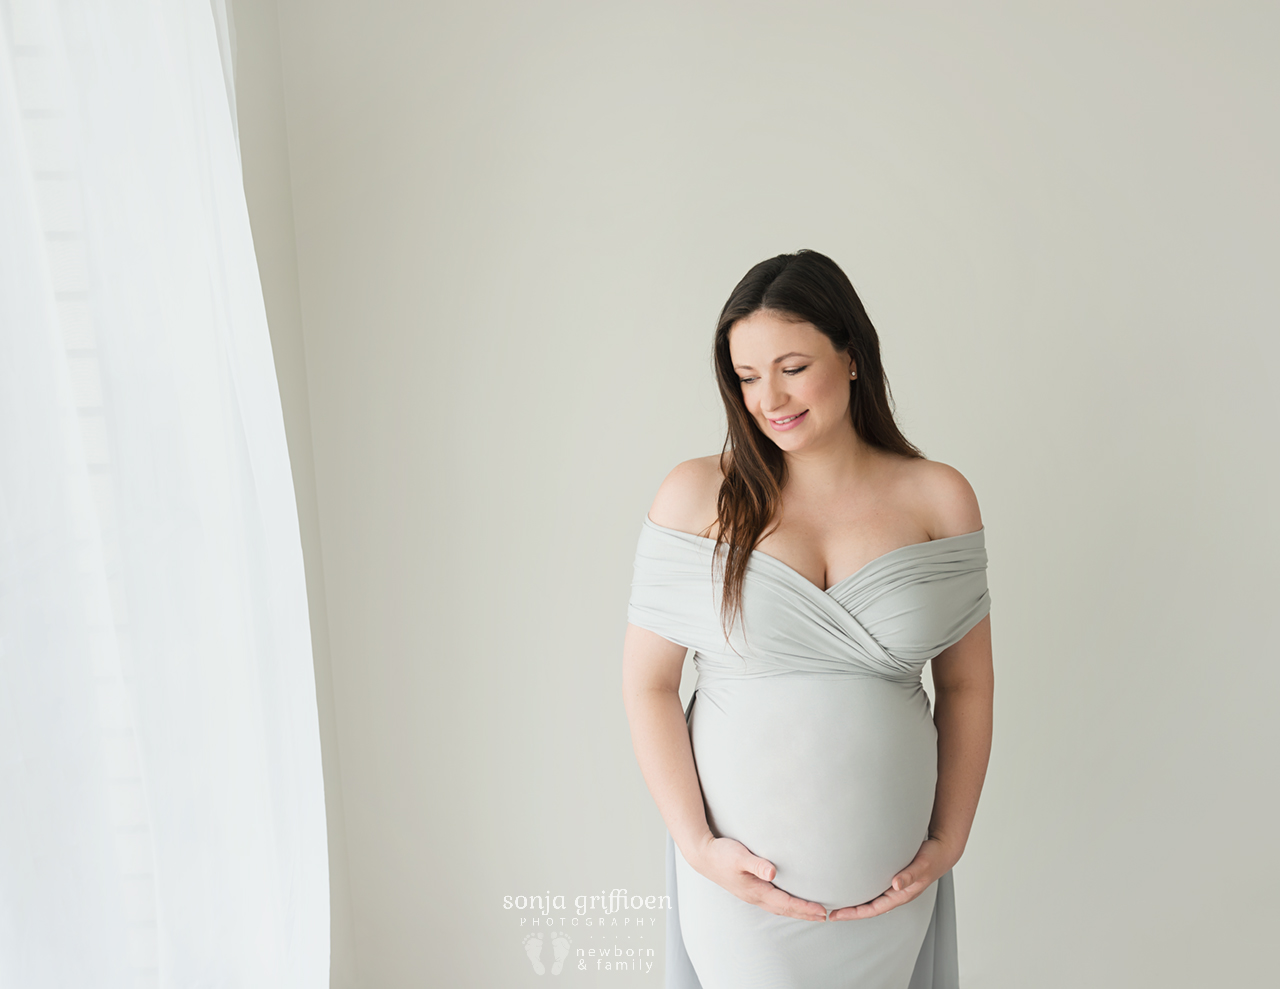 Sarah-Maternity-Brisbane-Newborn-Photographer-Sonja-Griffioen-05.jpg